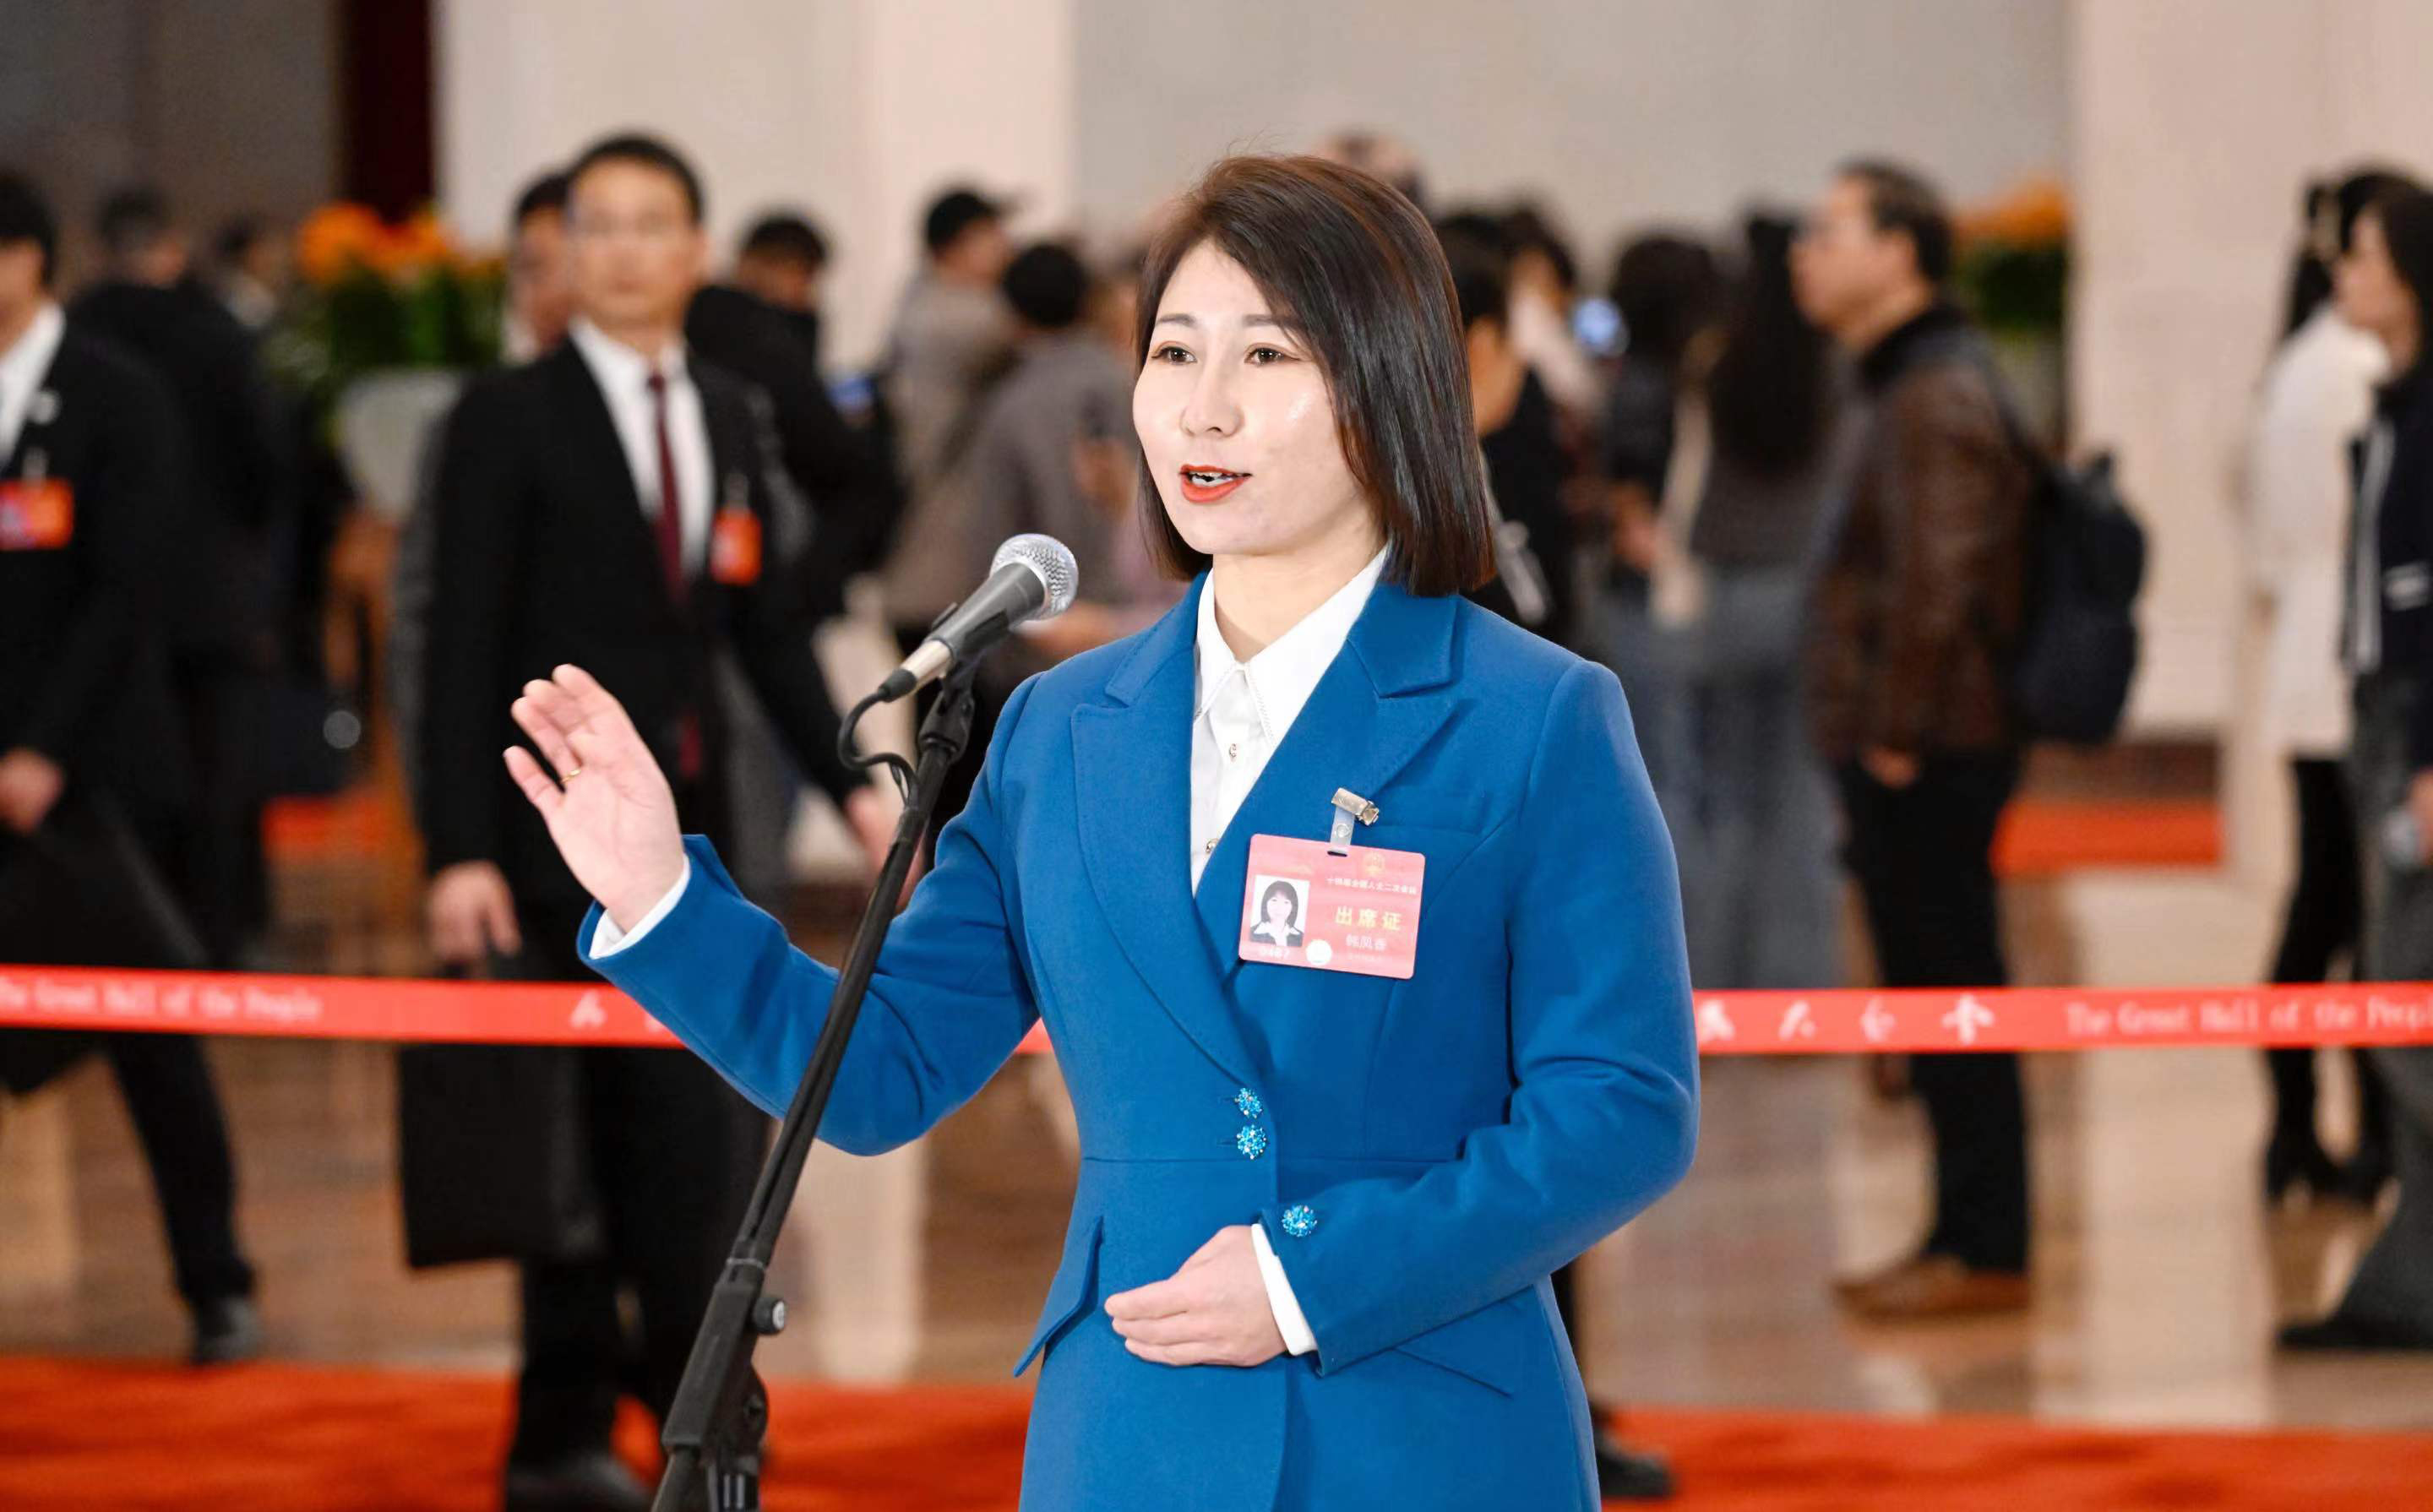 我省全国人大代表韩凤香在“代表通道”上接受采访